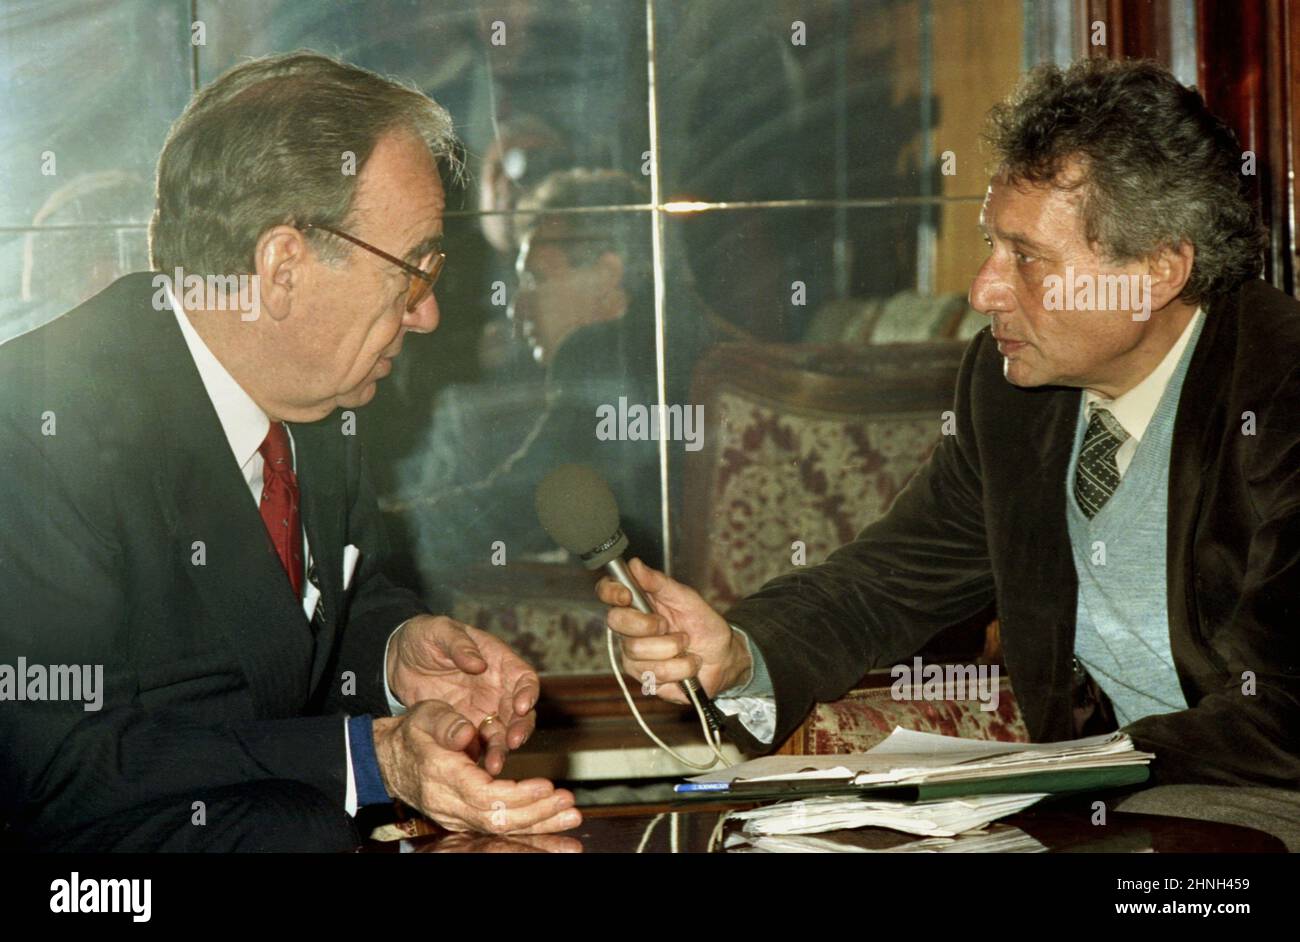 Bucharest, Romania, 1990. Australian- American business magnate Rupert Murdoch being interviewed by journalist Alexandru Stark (right), soon after the fall of communism. Stock Photo